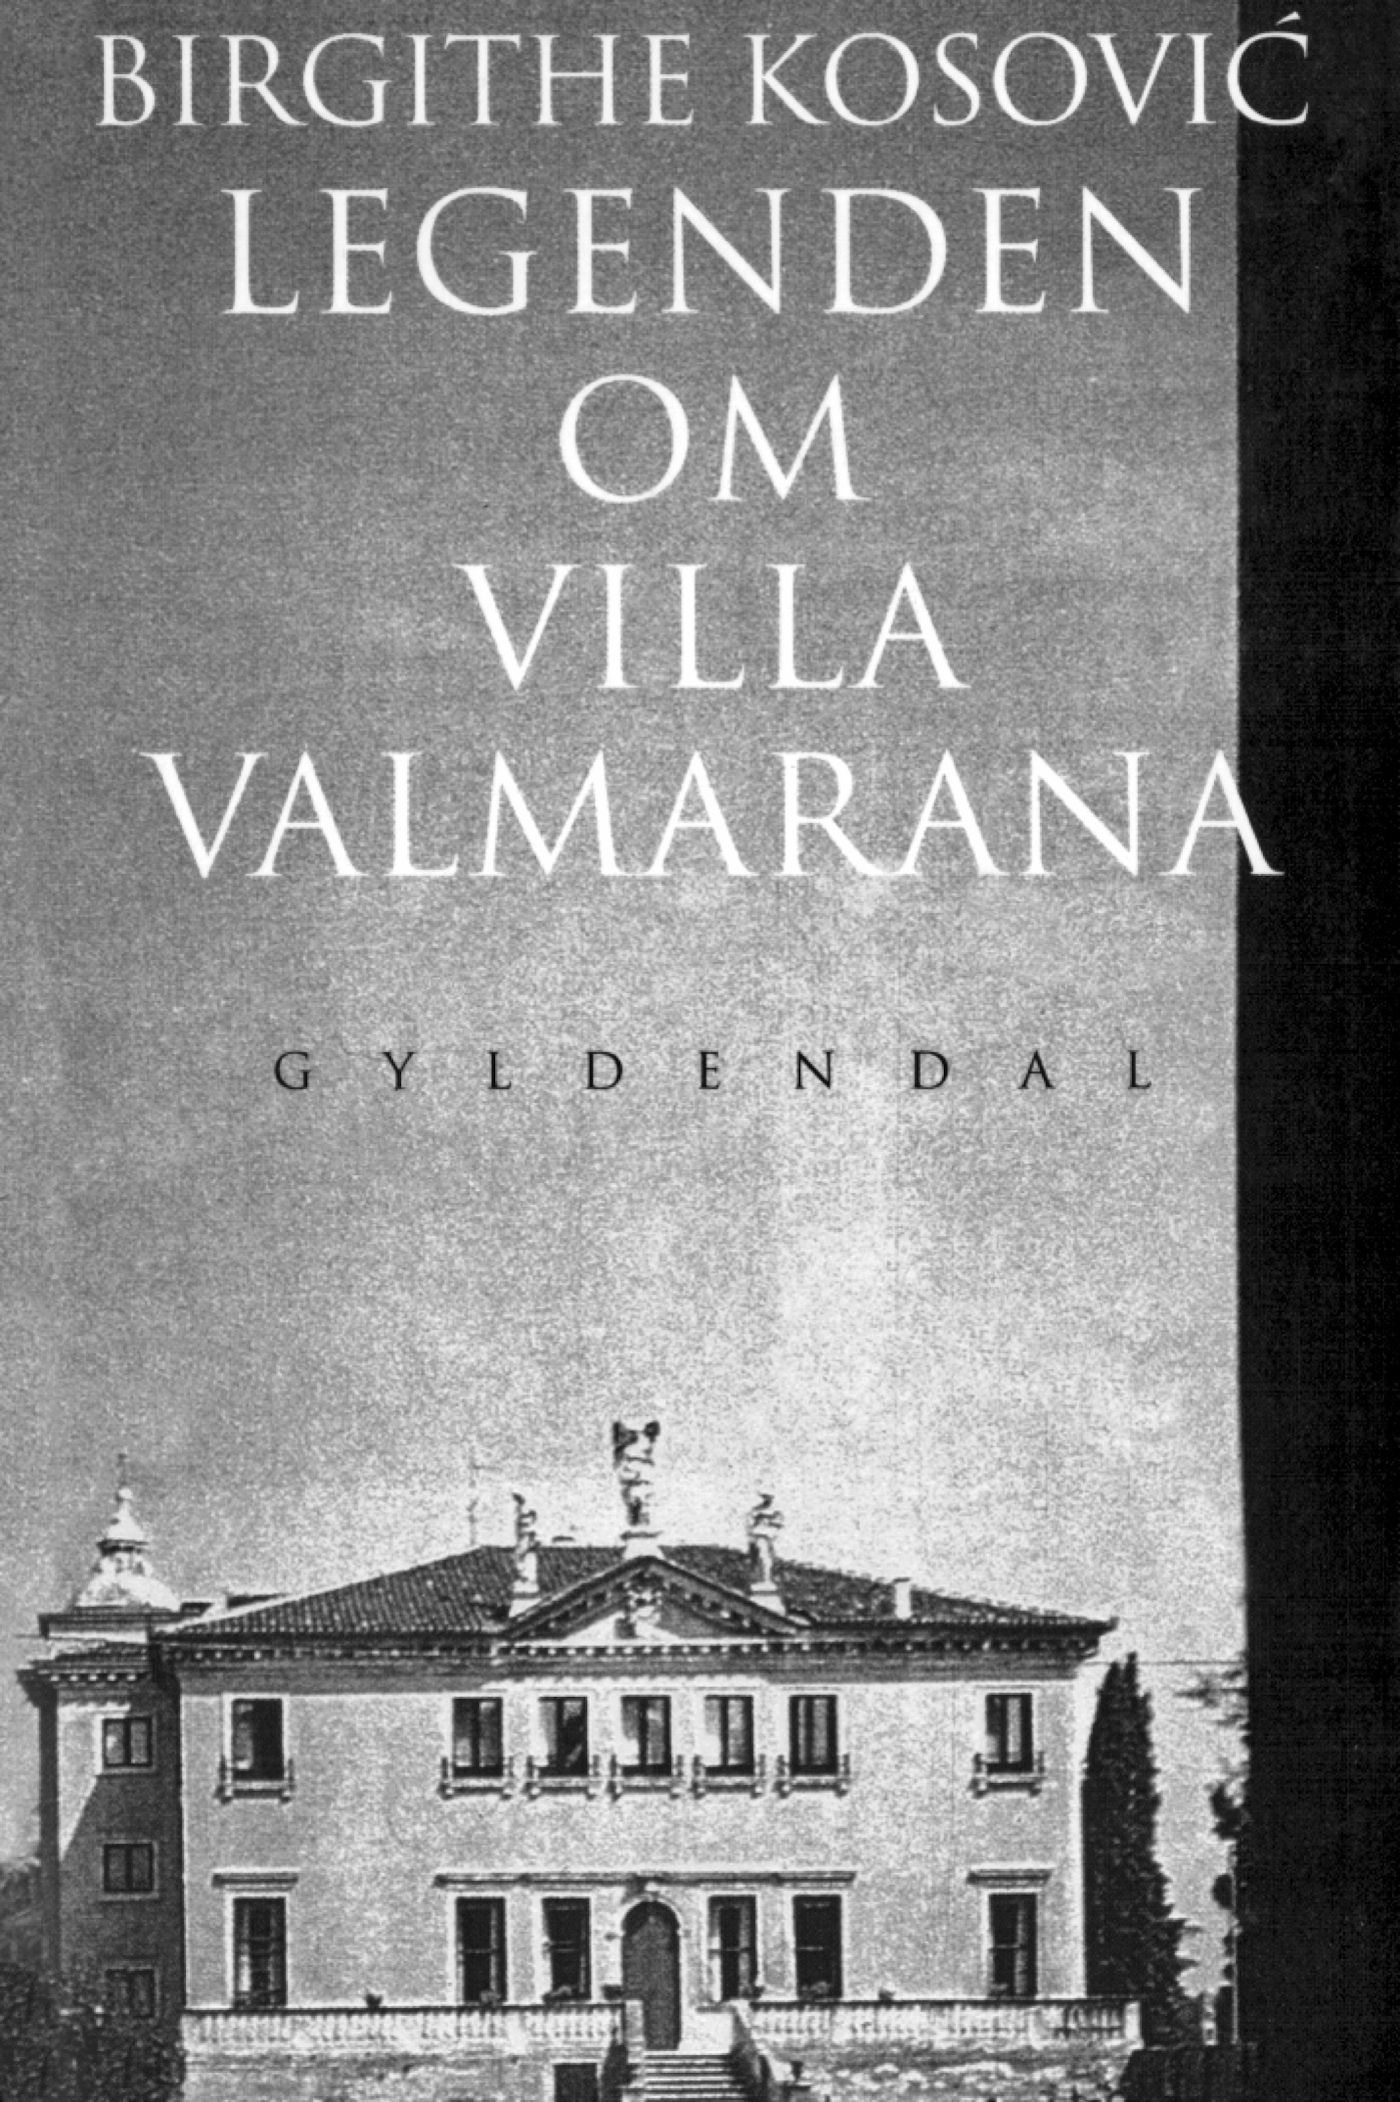 Legenden om Villa Valmarana, eBook by Birgithe Kosovic